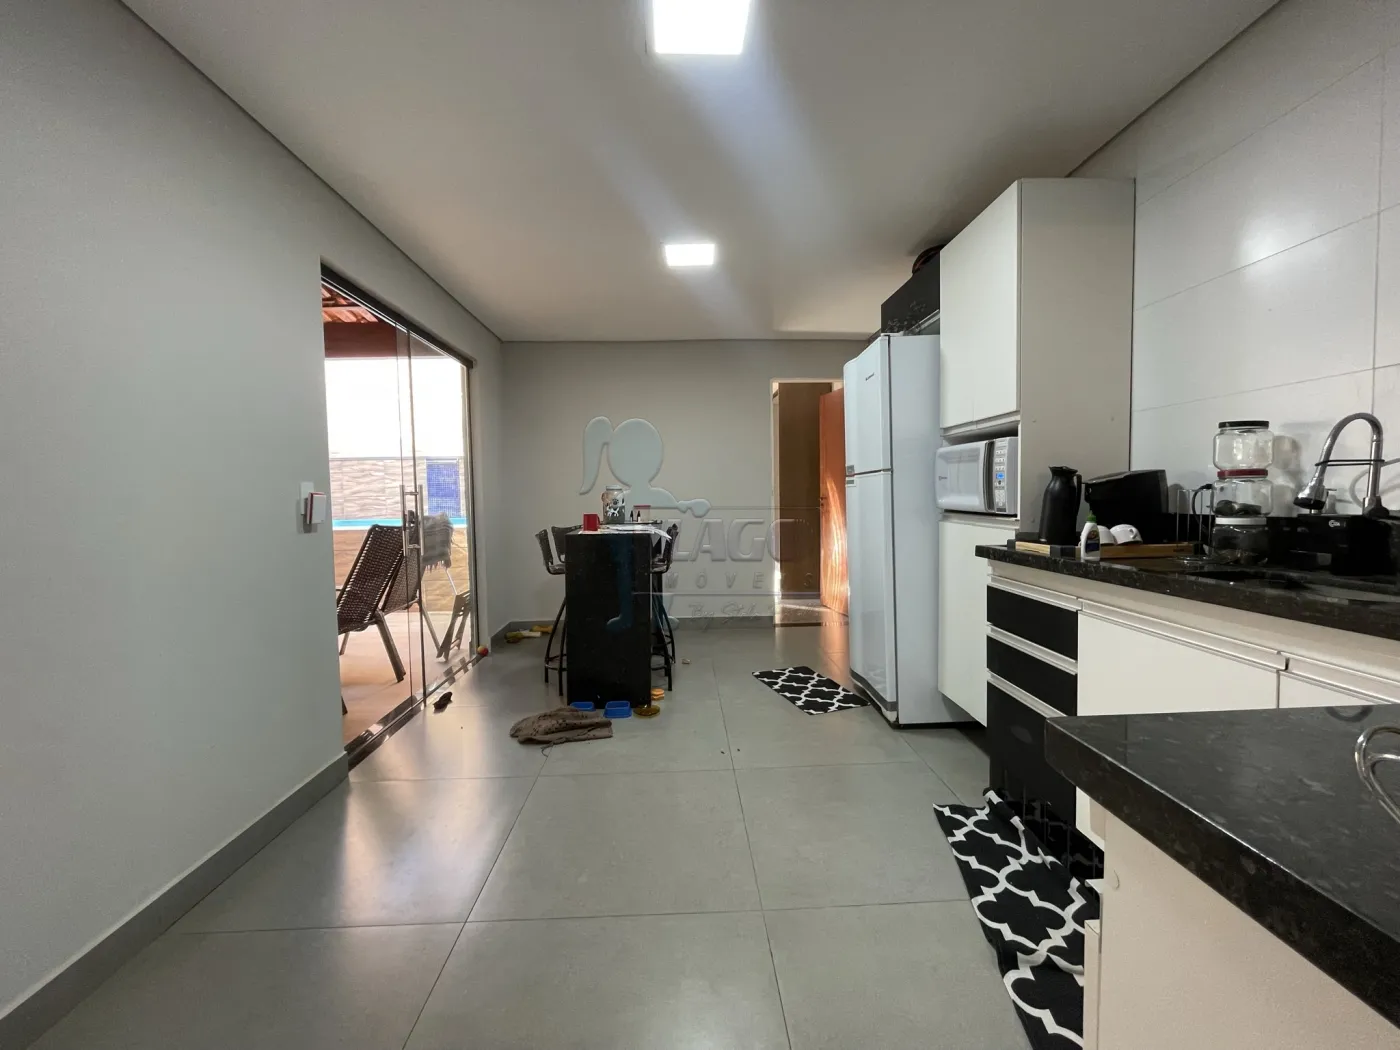 Comprar Casa / Padrão em Ribeirão Preto R$ 330.000,00 - Foto 16